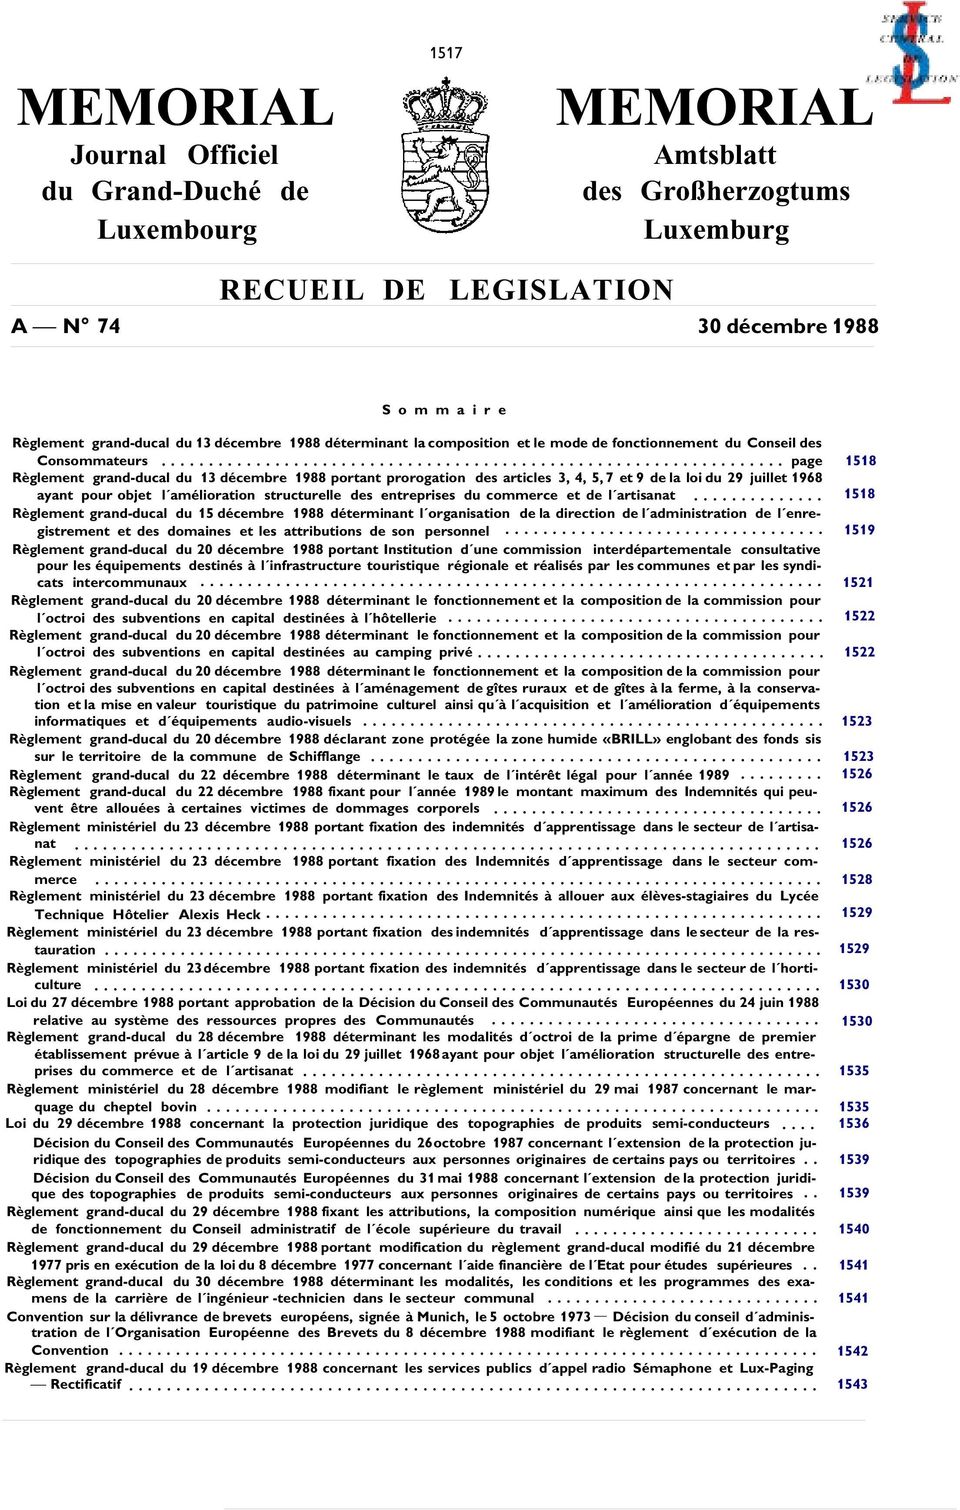 .. page 1518 Règlement grand-ducal du 13 décembre 1988 portant prorogation des articles 3, 4, 5, 7 et 9 de la loi du 29 juillet 1968 ayant pour objet l amélioration structurelle des entreprises du